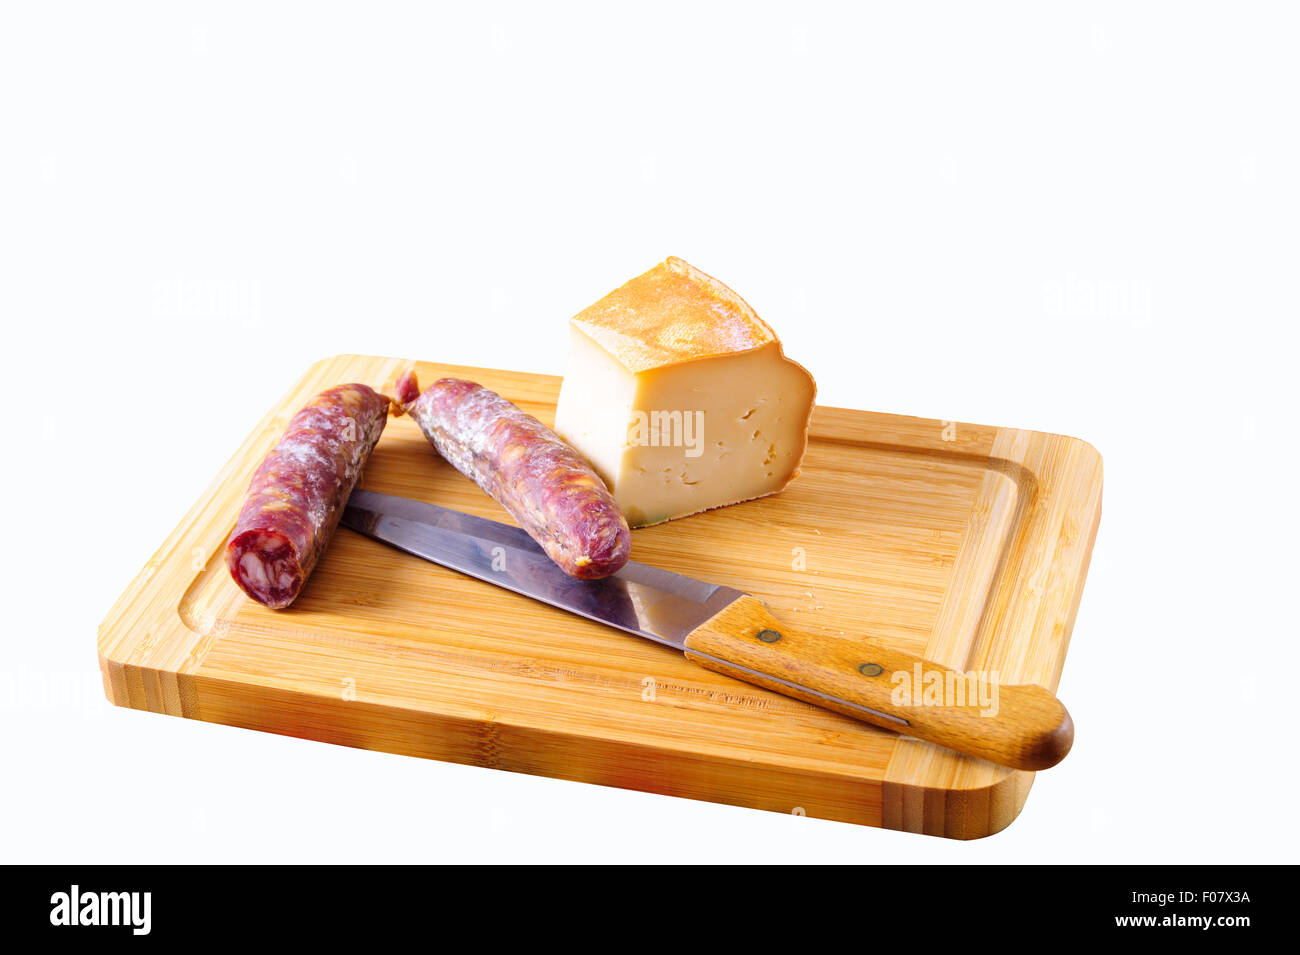 Salam et à la fontina, fromage italien grande Pentecôte cutter Banque D'Images